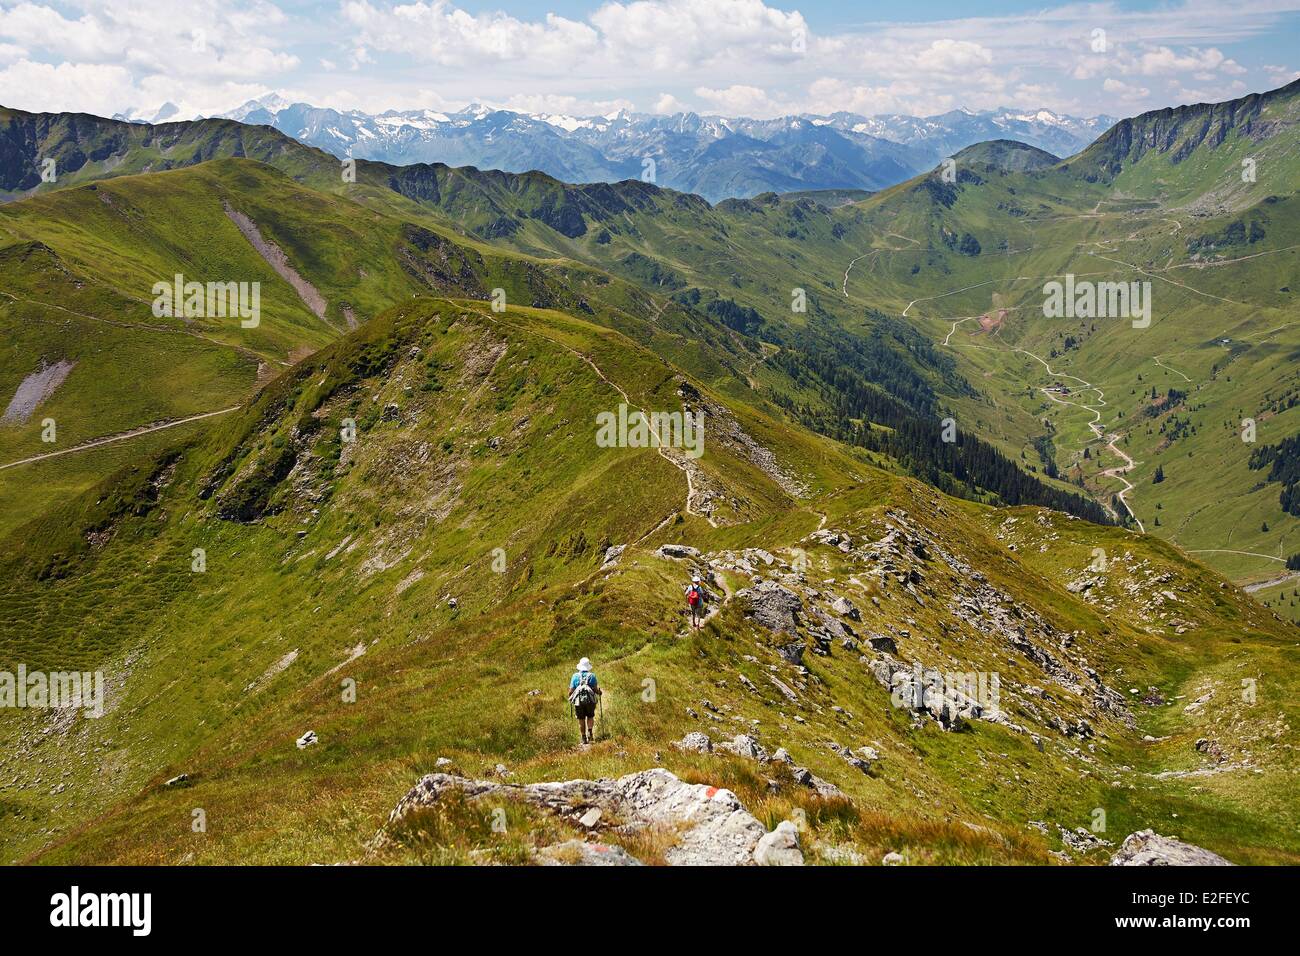 Austria, Land di Salisburgo, Kitzbuhel Alpi, Saalbach Hinterglemm, Saalbach Hinterglemm valle, vista degli Alti Tauri mountain range Foto Stock